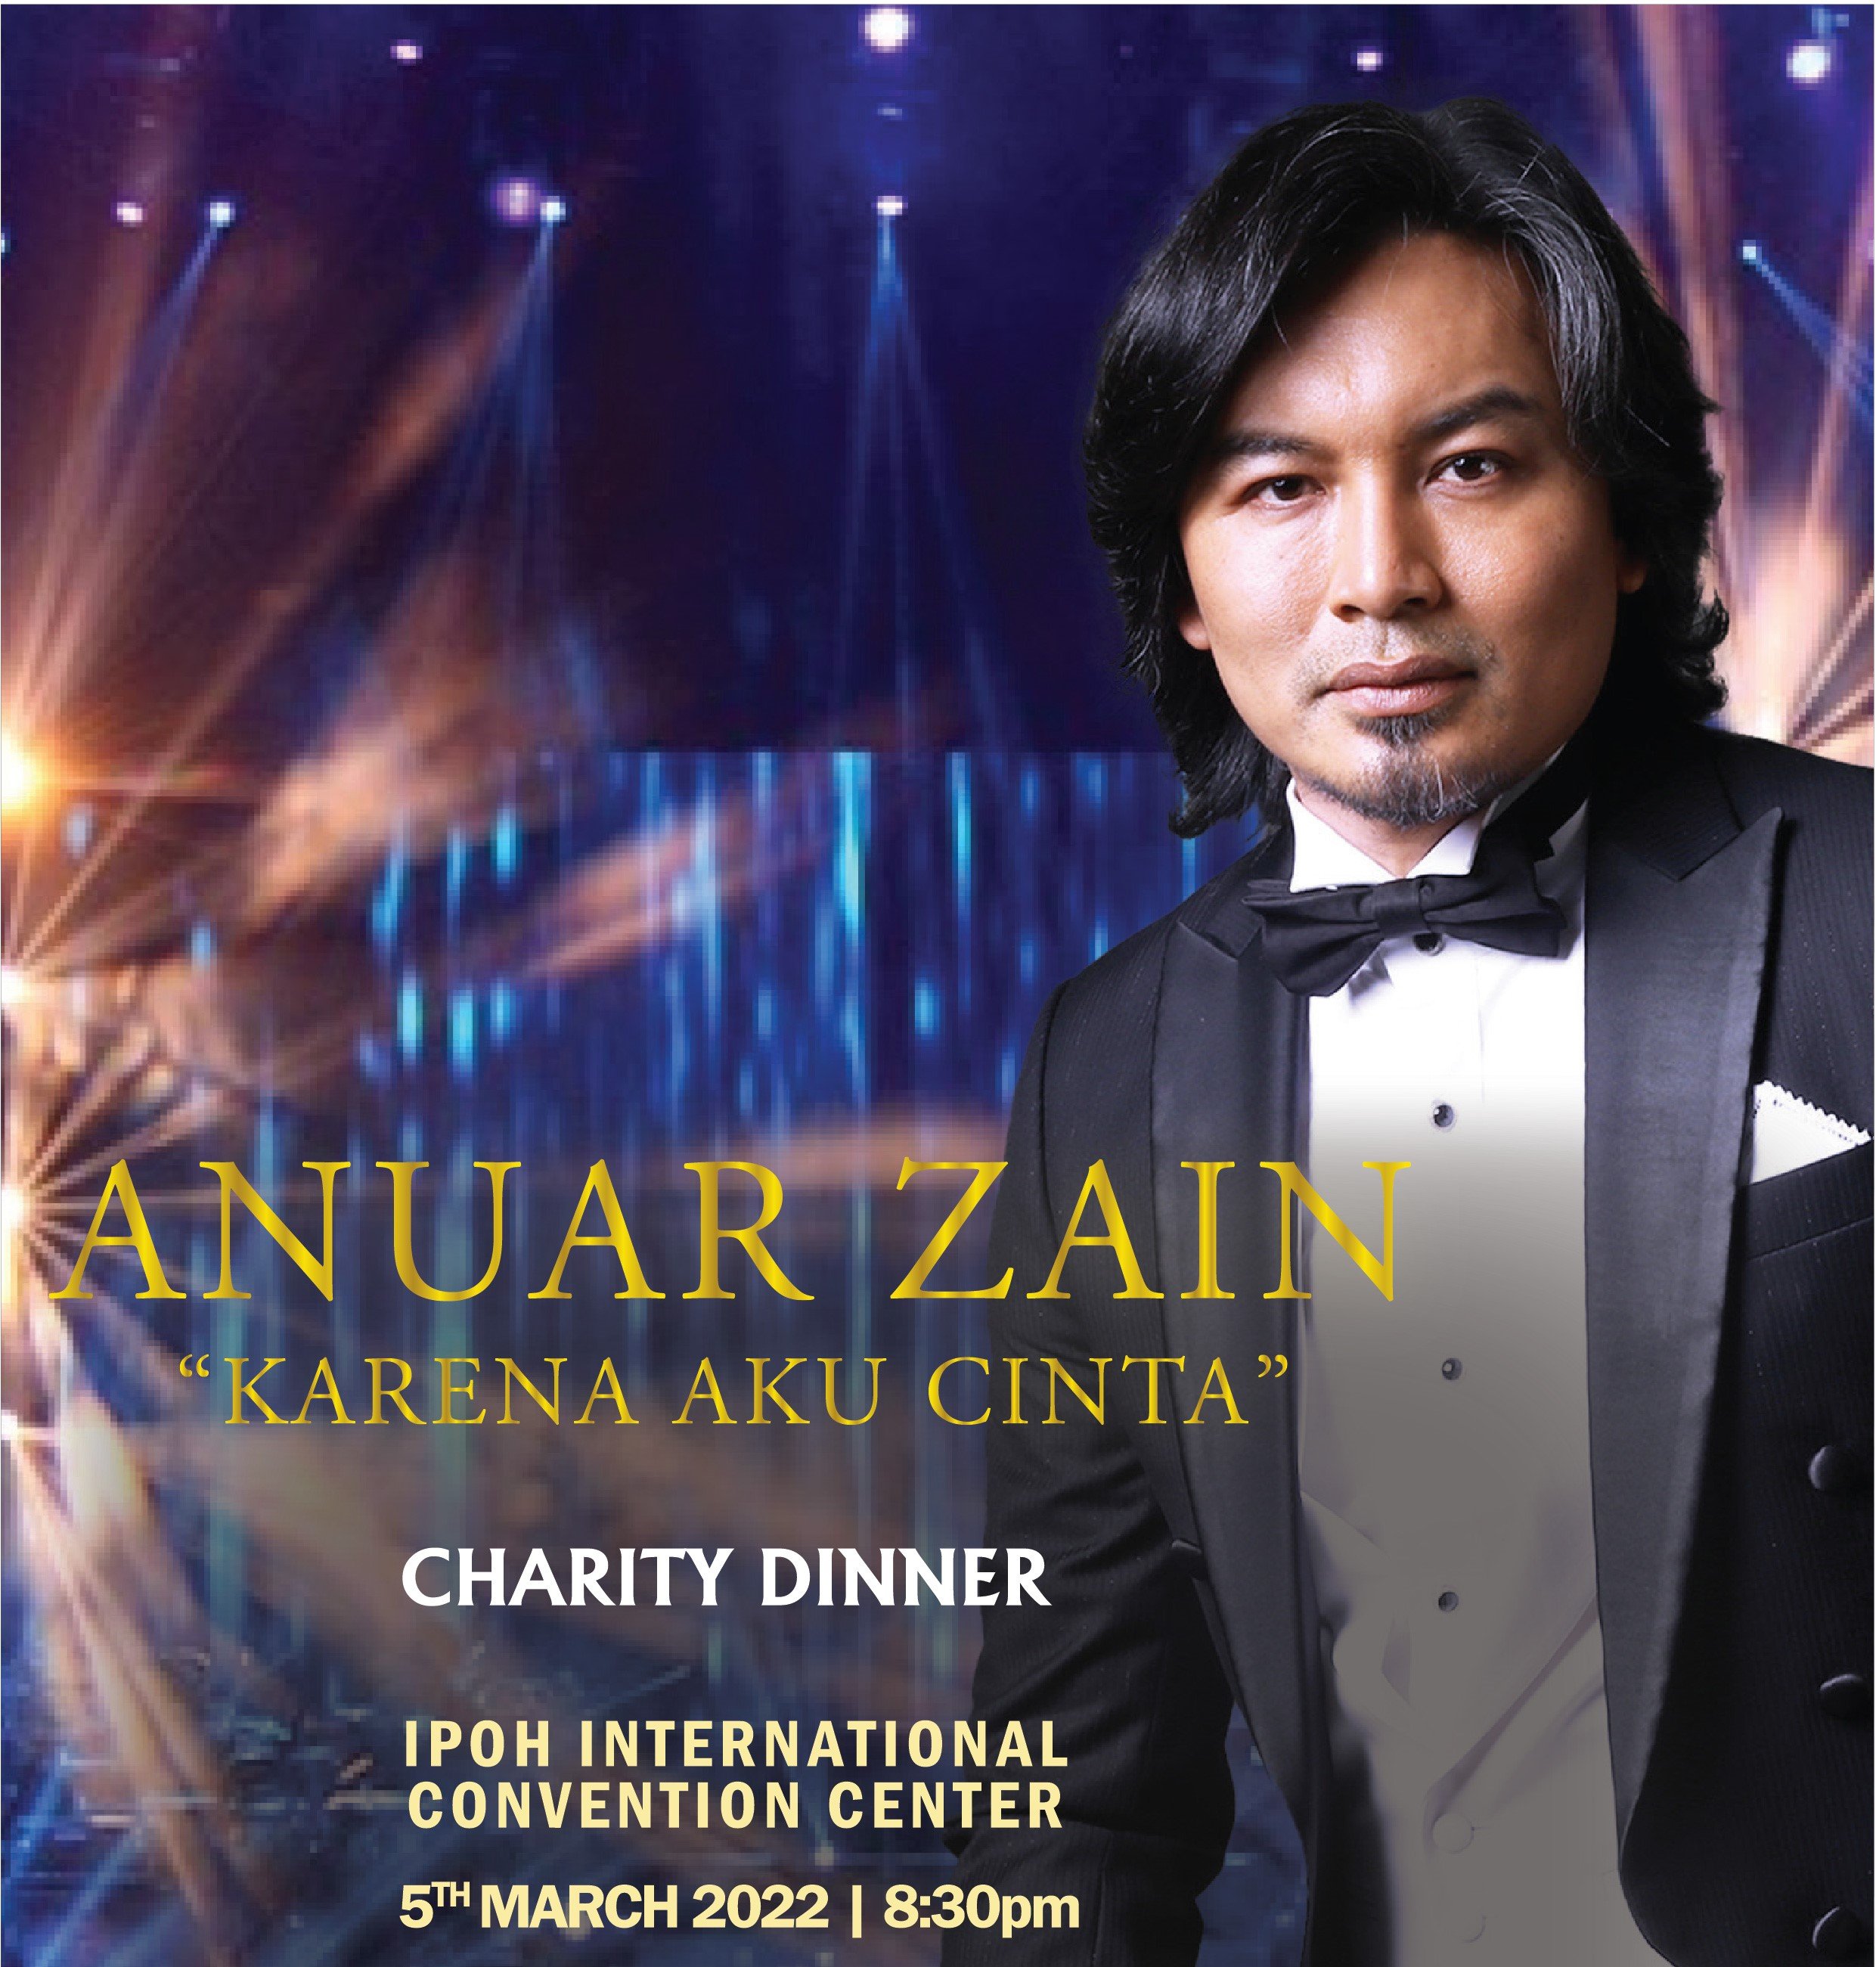 Anuar Zain Charity Dinner – ‘Karena Aku Cinta’